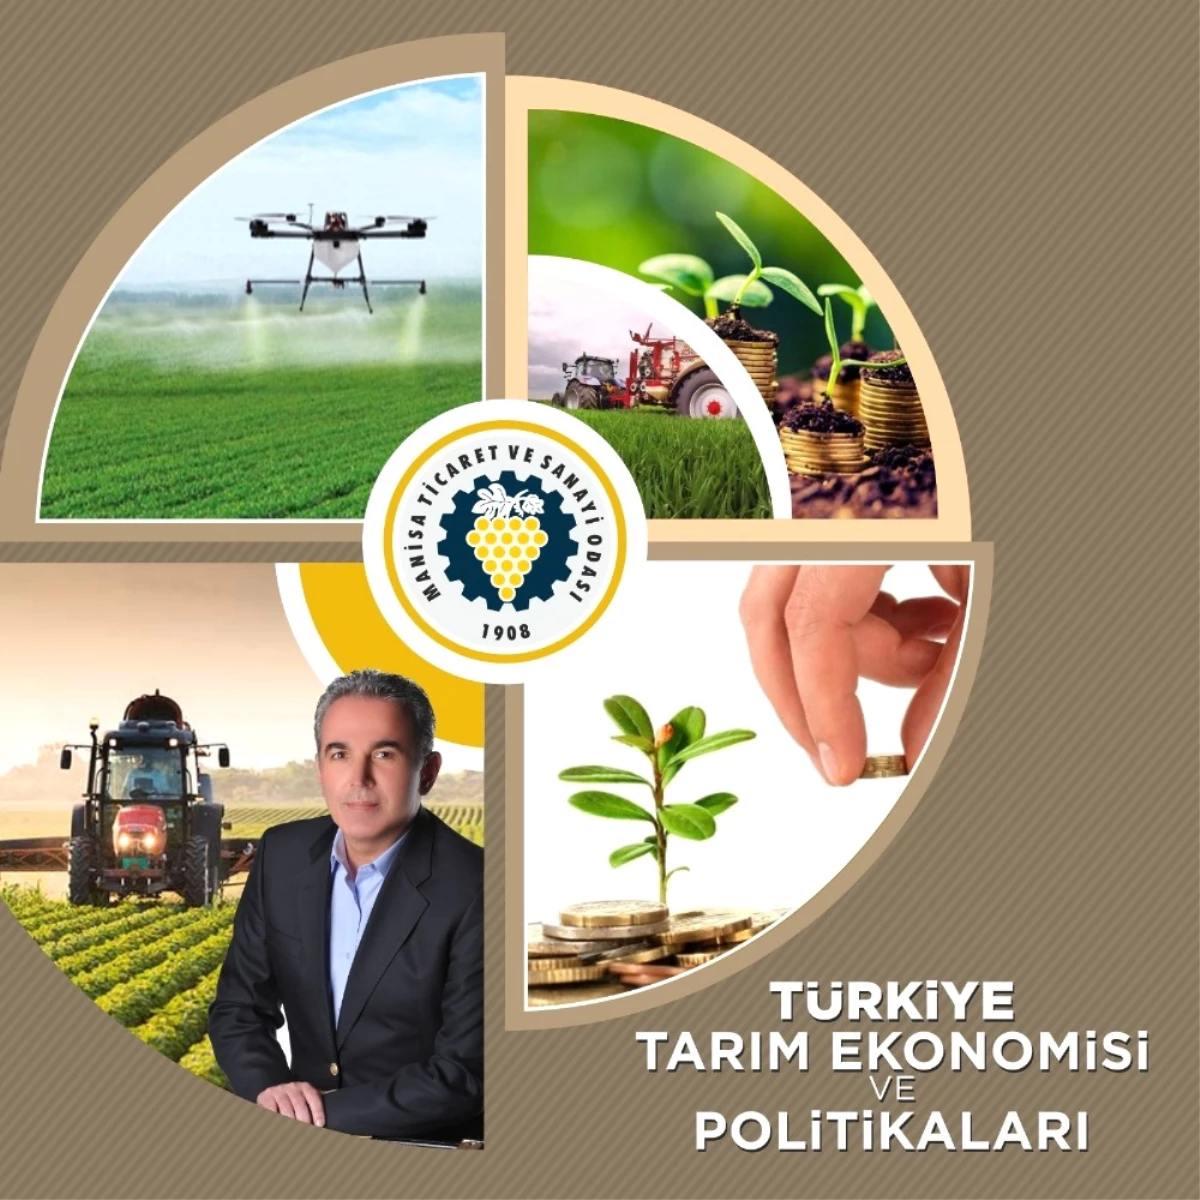 Manisa Tso\'da Türkiye Tarım Ekonomisi ve Politikaları Konuşulacak